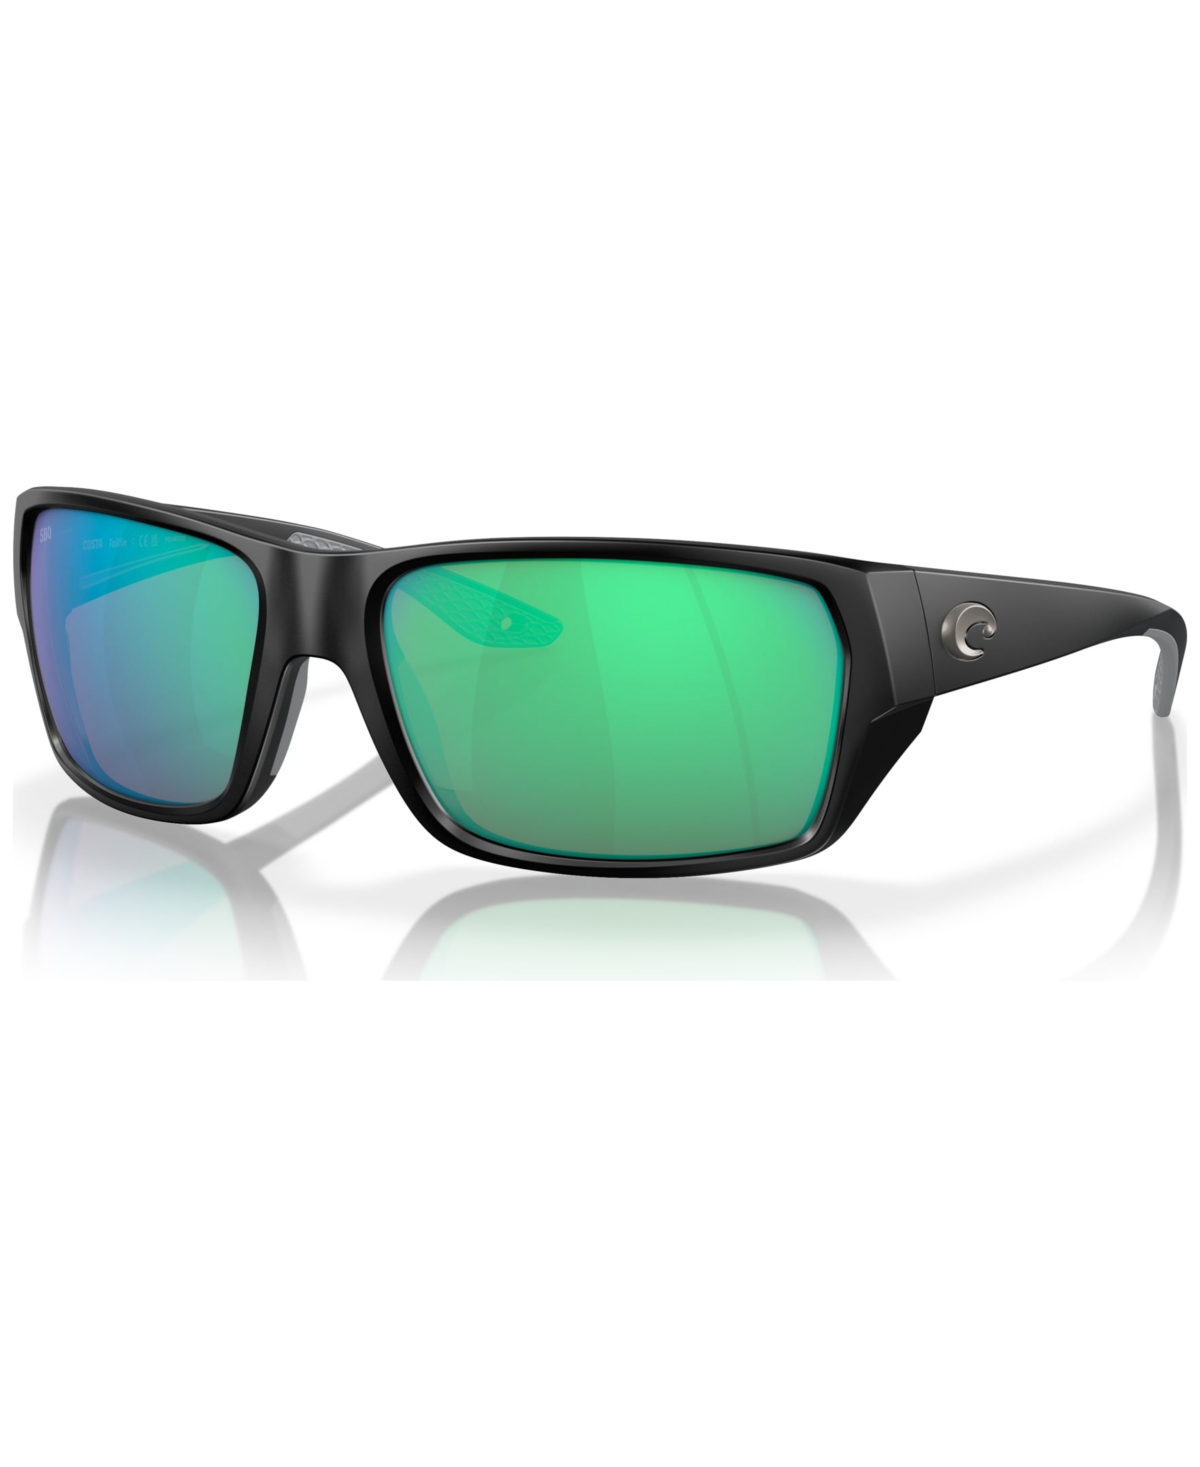 Men's Tailfin Polarized Sunglasses, Mirror 6S9113 - Matte Black